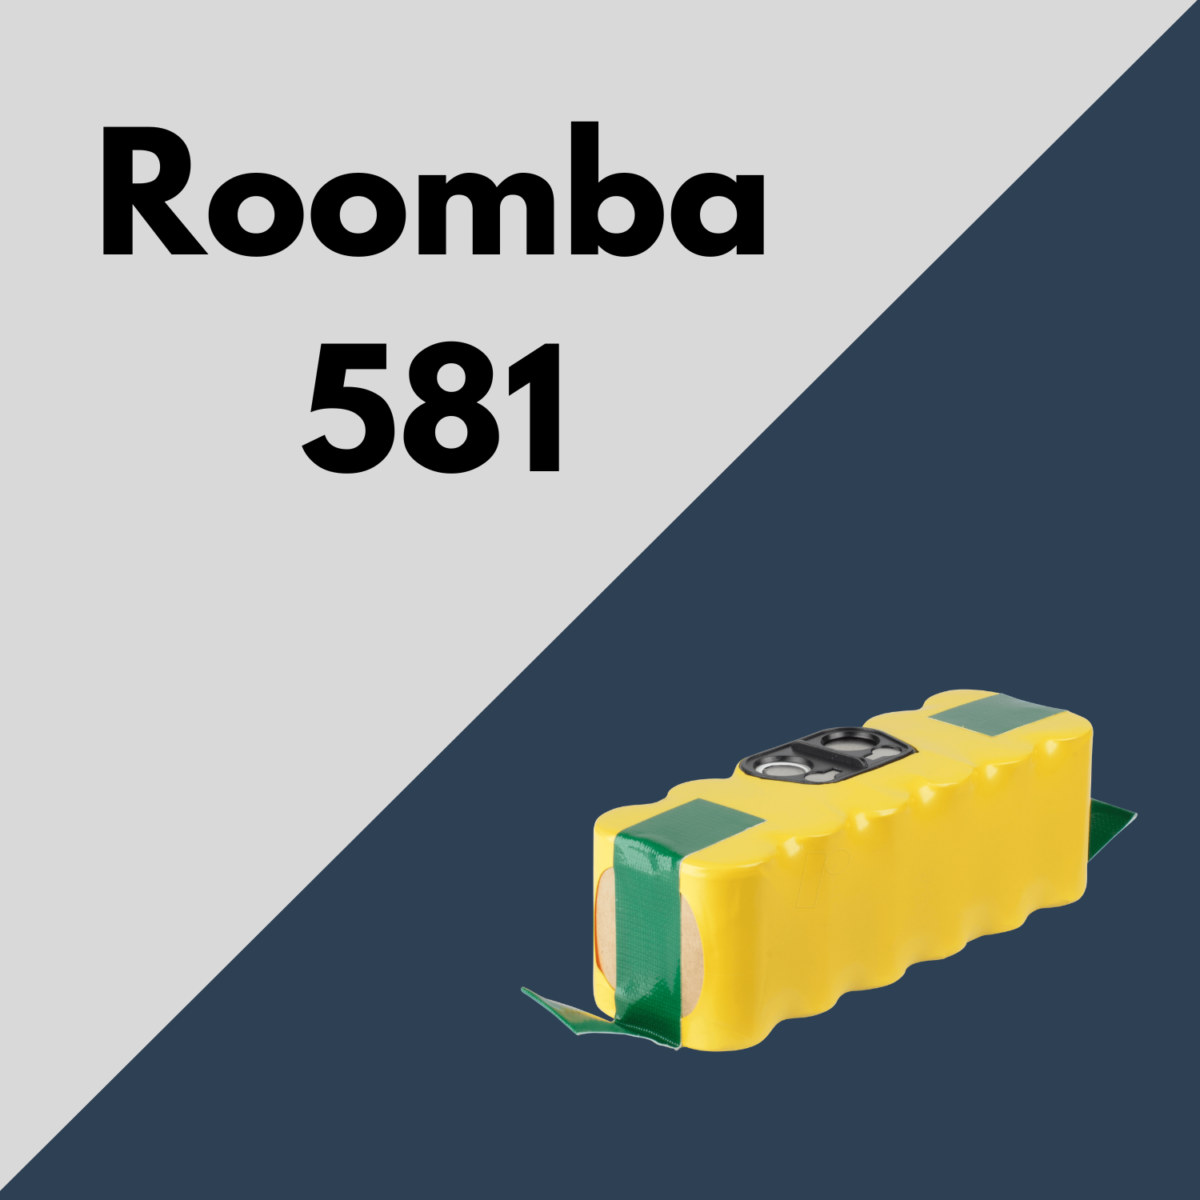 batterie roomba 581